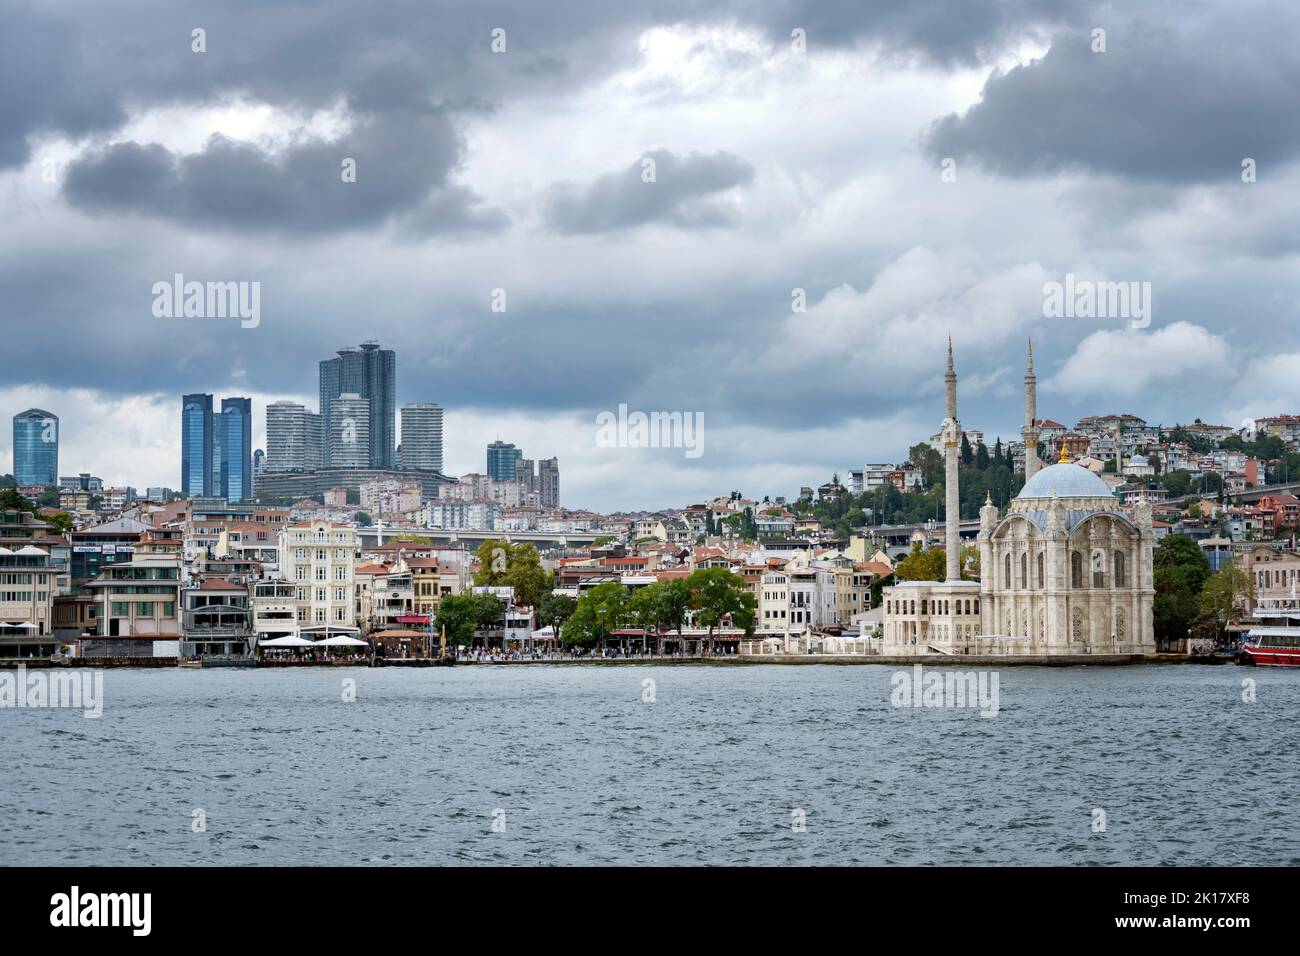 Türkei, Estambul, Blick über den Bosporus auf die Hochhäuser von Levent und die Schiff, Kreuzfahrtschiffe, Schiffe, crucero, barco, crucero, mar, Foto de stock